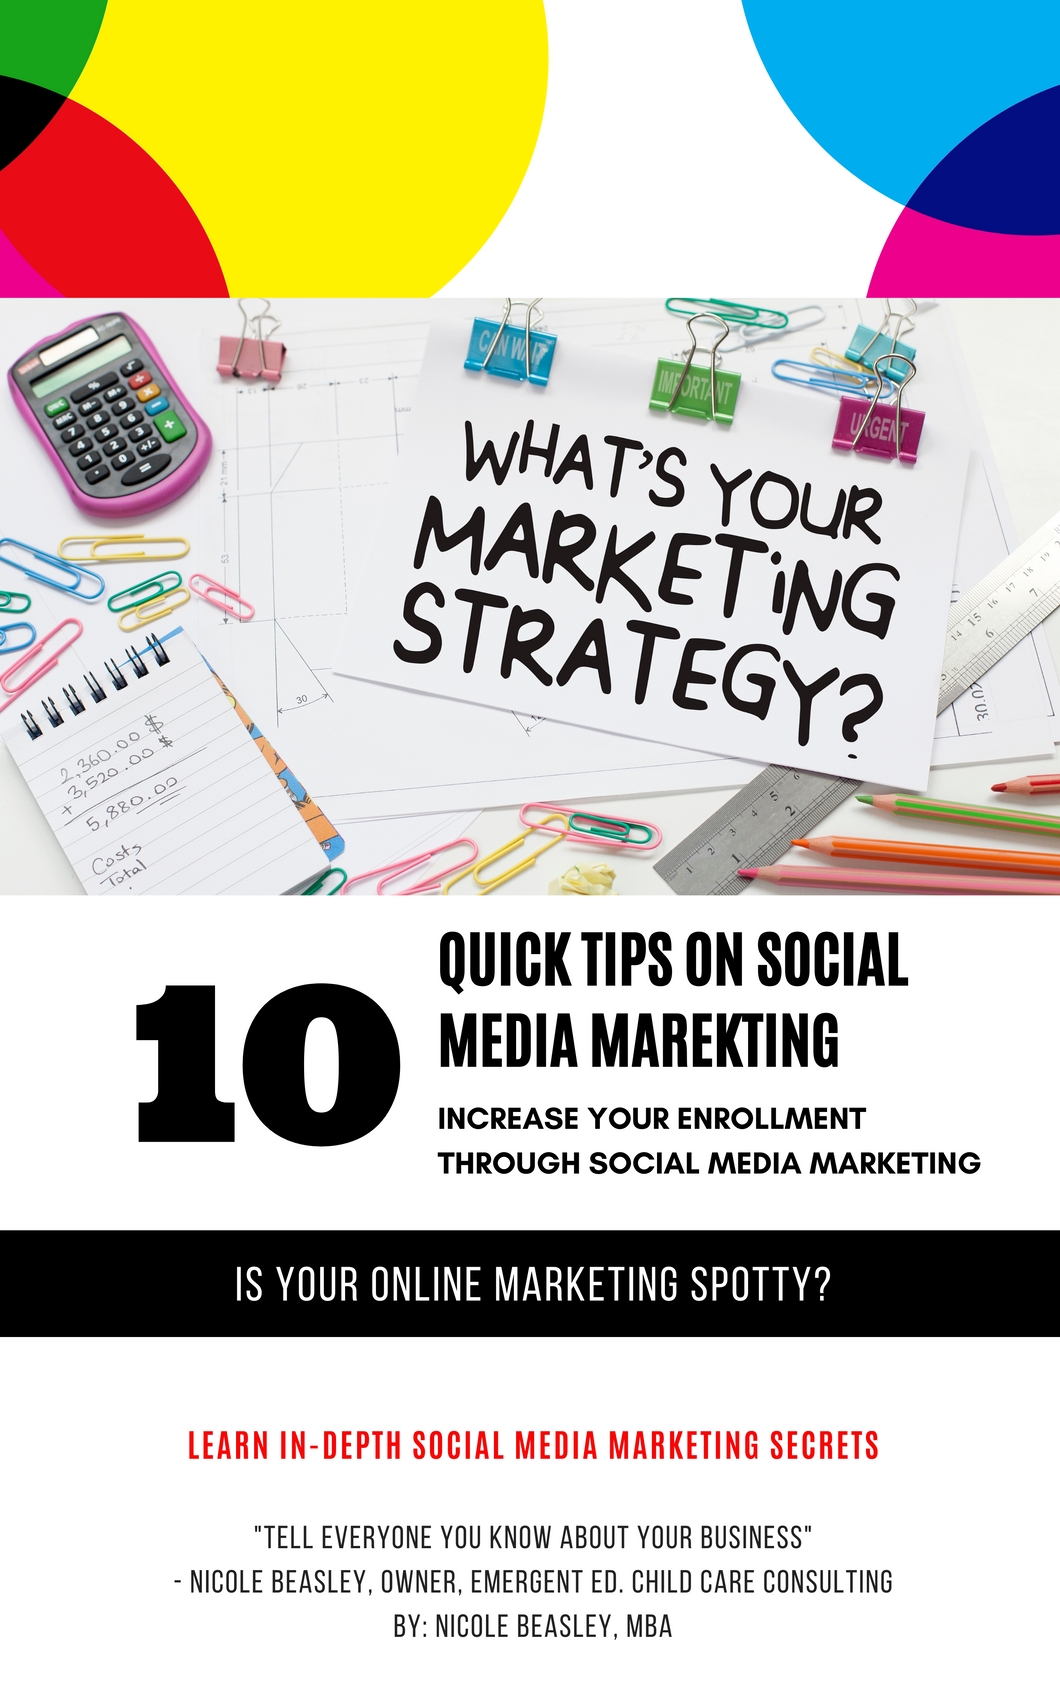 10 Quick Tips on Social Media Marketing